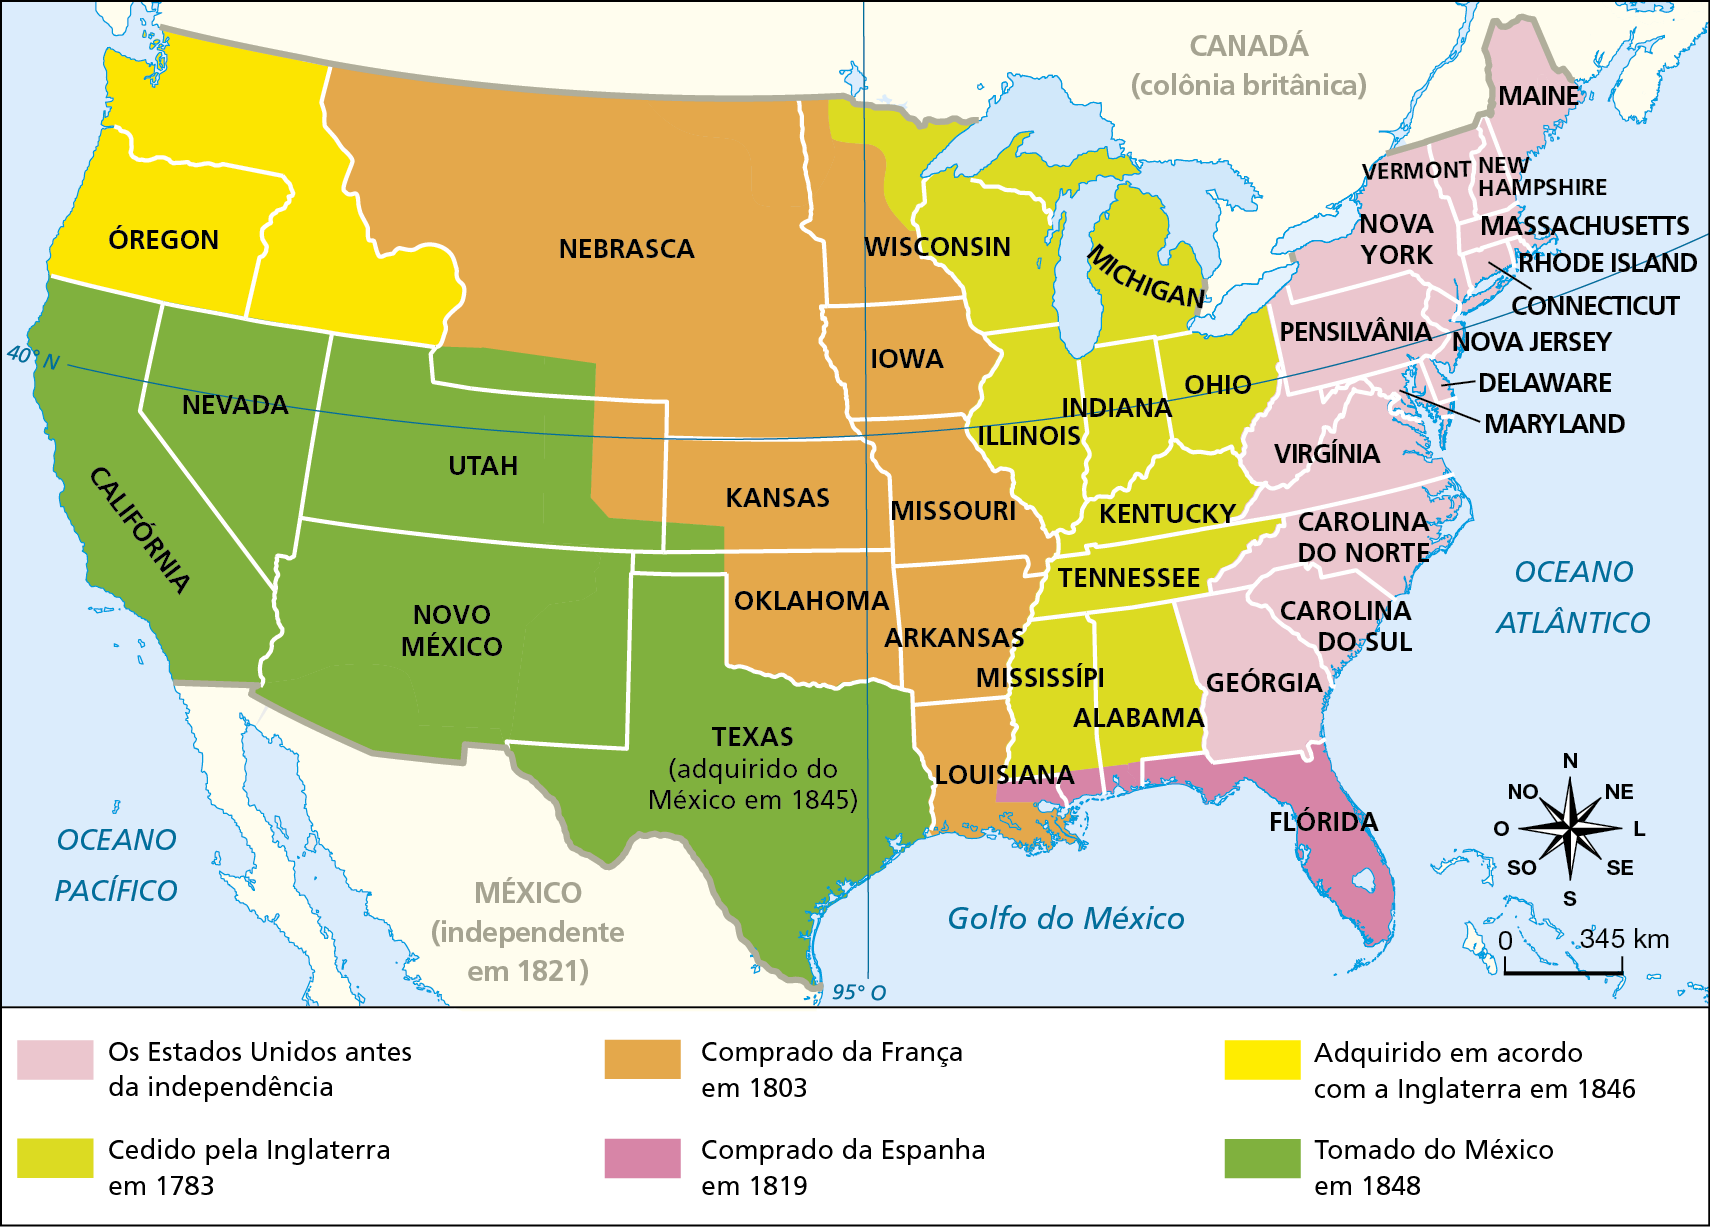 Mapa. Estados Unidos: expansão territorial (de 1803 a 1853). 
O mapa representa o território dos Estados Unidos entre as fronteiras do México (ao sul) e Canadá (ao norte). O mapa destaca:
Estados antes da independência: Maine, Vermont, New Hampshire, Nova York, MassachusetTs, Rhode Island, Connecticut, Nova Jersey, Maryland, Delaware, Pensilvânia, Virgínia, Carolina do Norte, Carolina do Sul, Geórgia. 
Territórios cedido pela Inglaterra em 1783: Michigan, Ohio, Indiana, Illinois, Kentucky, TennessEe, Mississípi, Alabama, Wisconsin. 
Territórios comprados da França em 1803: Nebraska, Kansas, Oklahoma, Ohio, Missouri, Arkansas, Louisiana. 
Territórios comprados da Espanha em 1819: Flórida. 
Territórios adquiridos em acordo com a Inglaterra em 1846: Óregon. 
Territórios tomados do México em 1848: Nevada, Califórnia, Utah, Novo México, Texas (adquirido do México em 1845). 
Na parte inferior direita, rosa dos ventos e escala de 0 a 345 quilômetros.